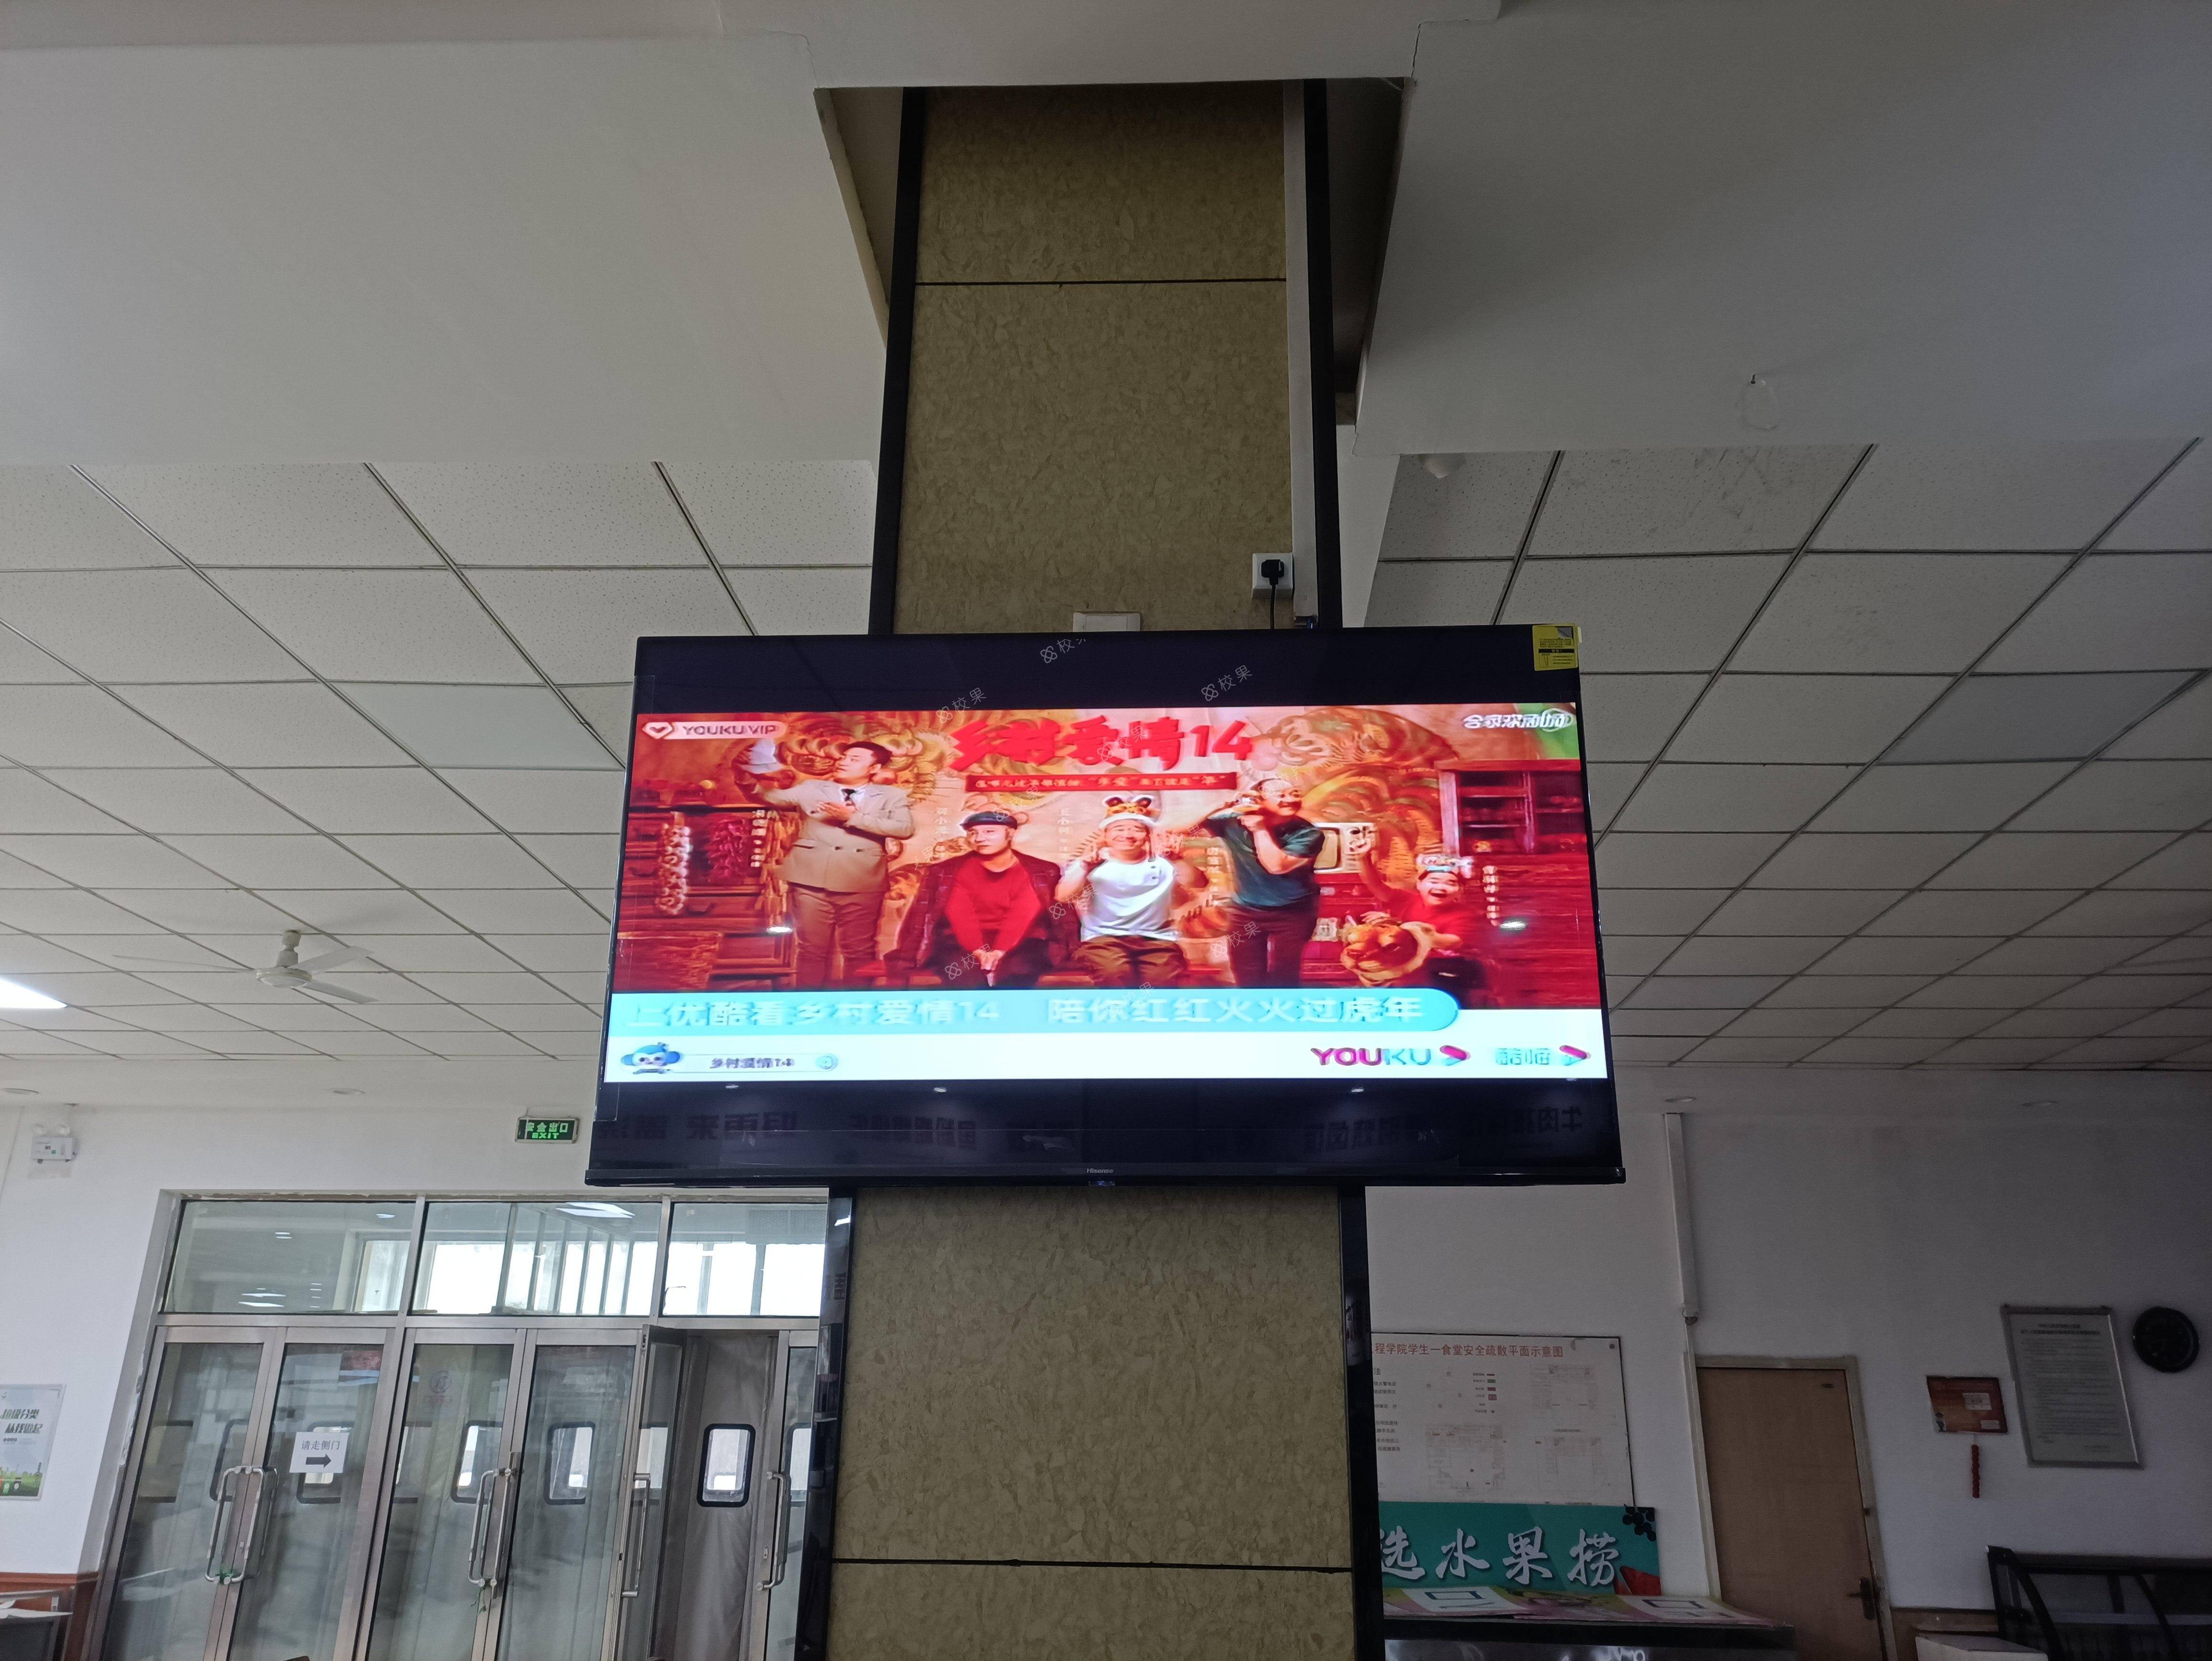 液晶屏广告 北京电影学院